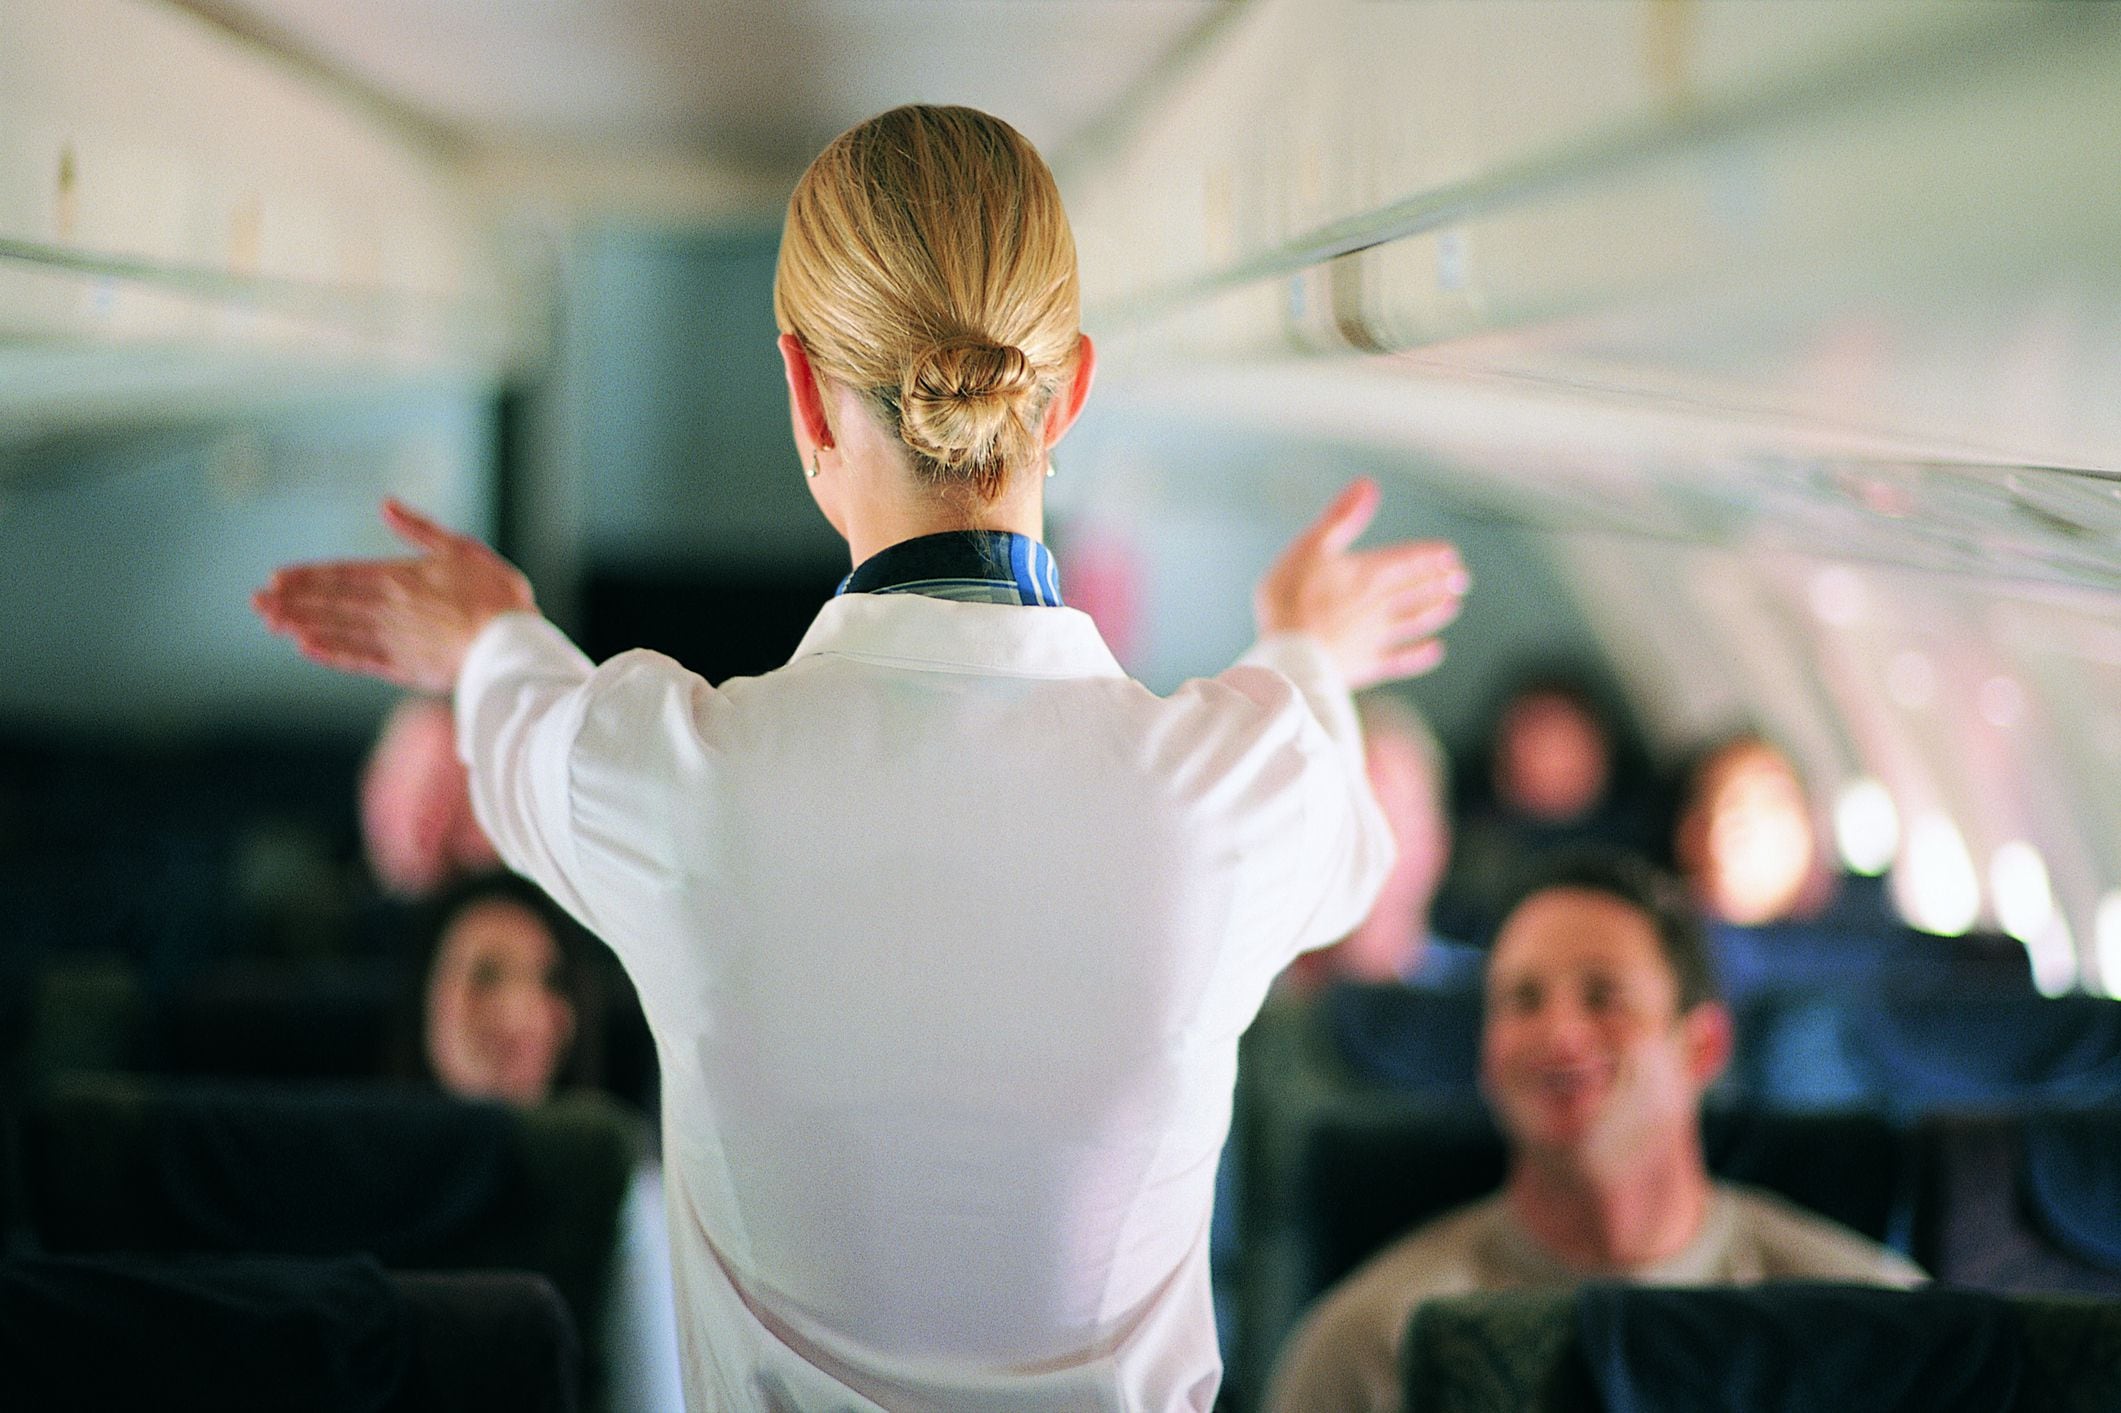 Las personas con miedo a volar aseguran sentirse más seguras viajando de día (Getty)